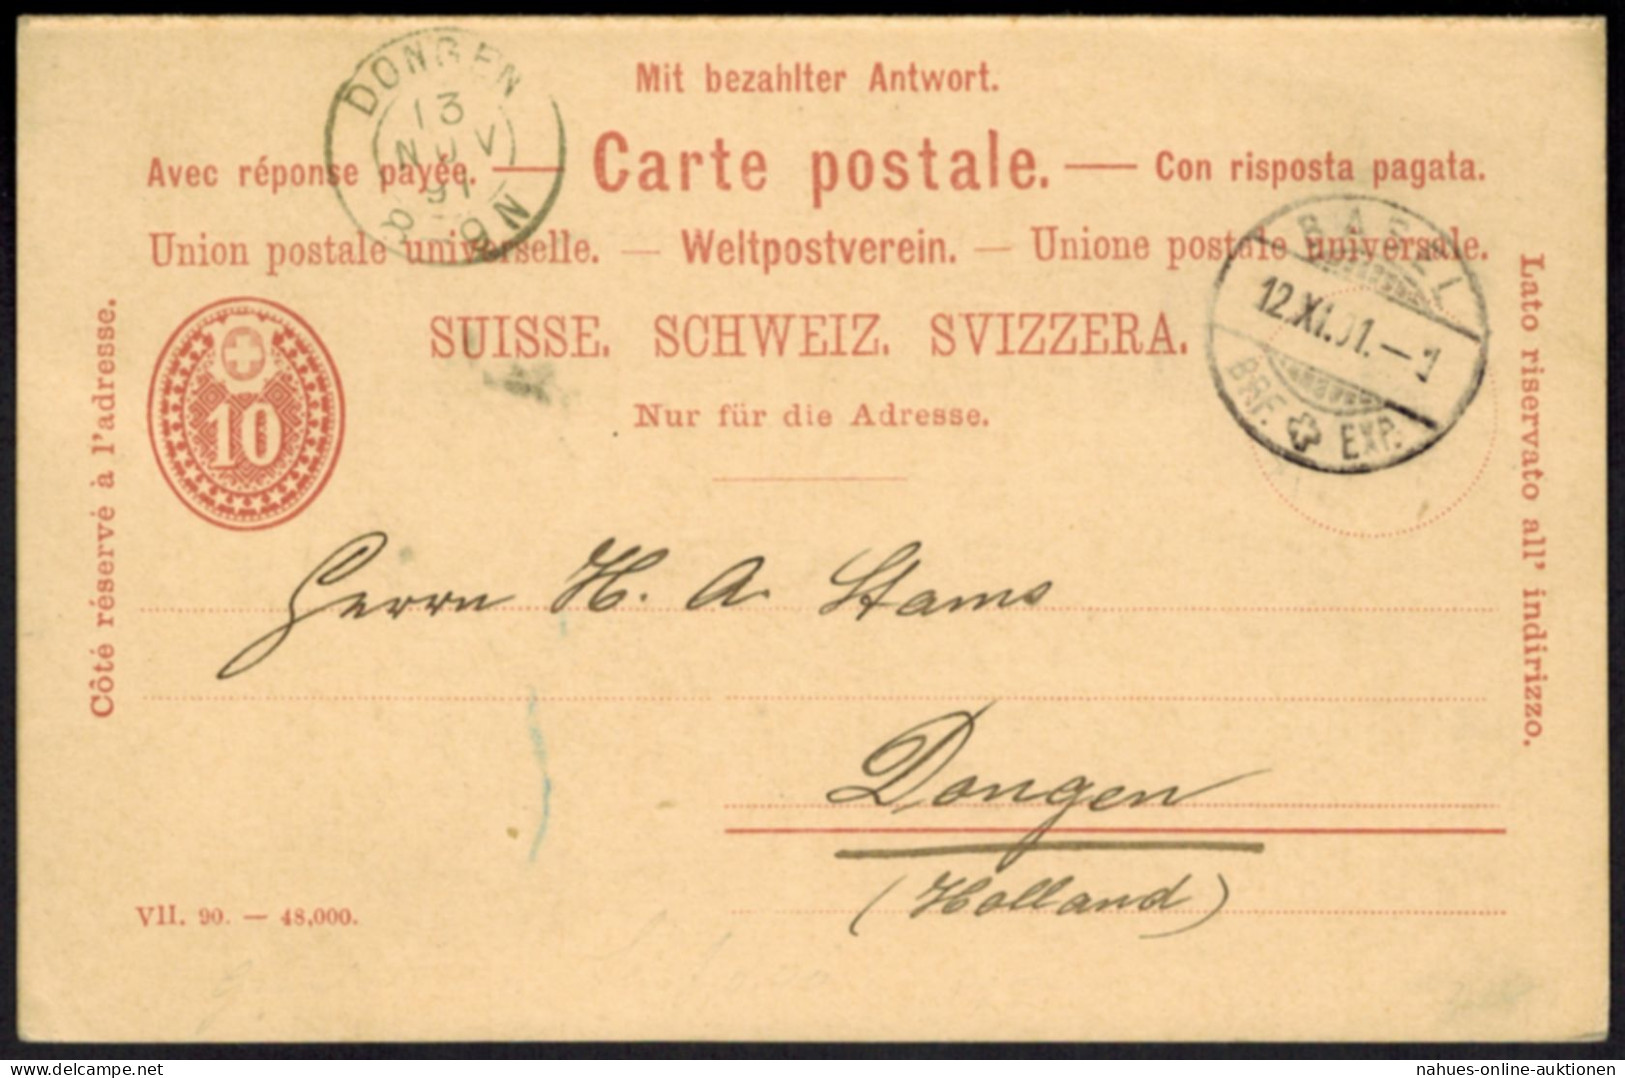 Schweiz Ganzsache P 25 F/A Frage Und Antwort Von Basel N. Dongen 1891 - Lettres & Documents